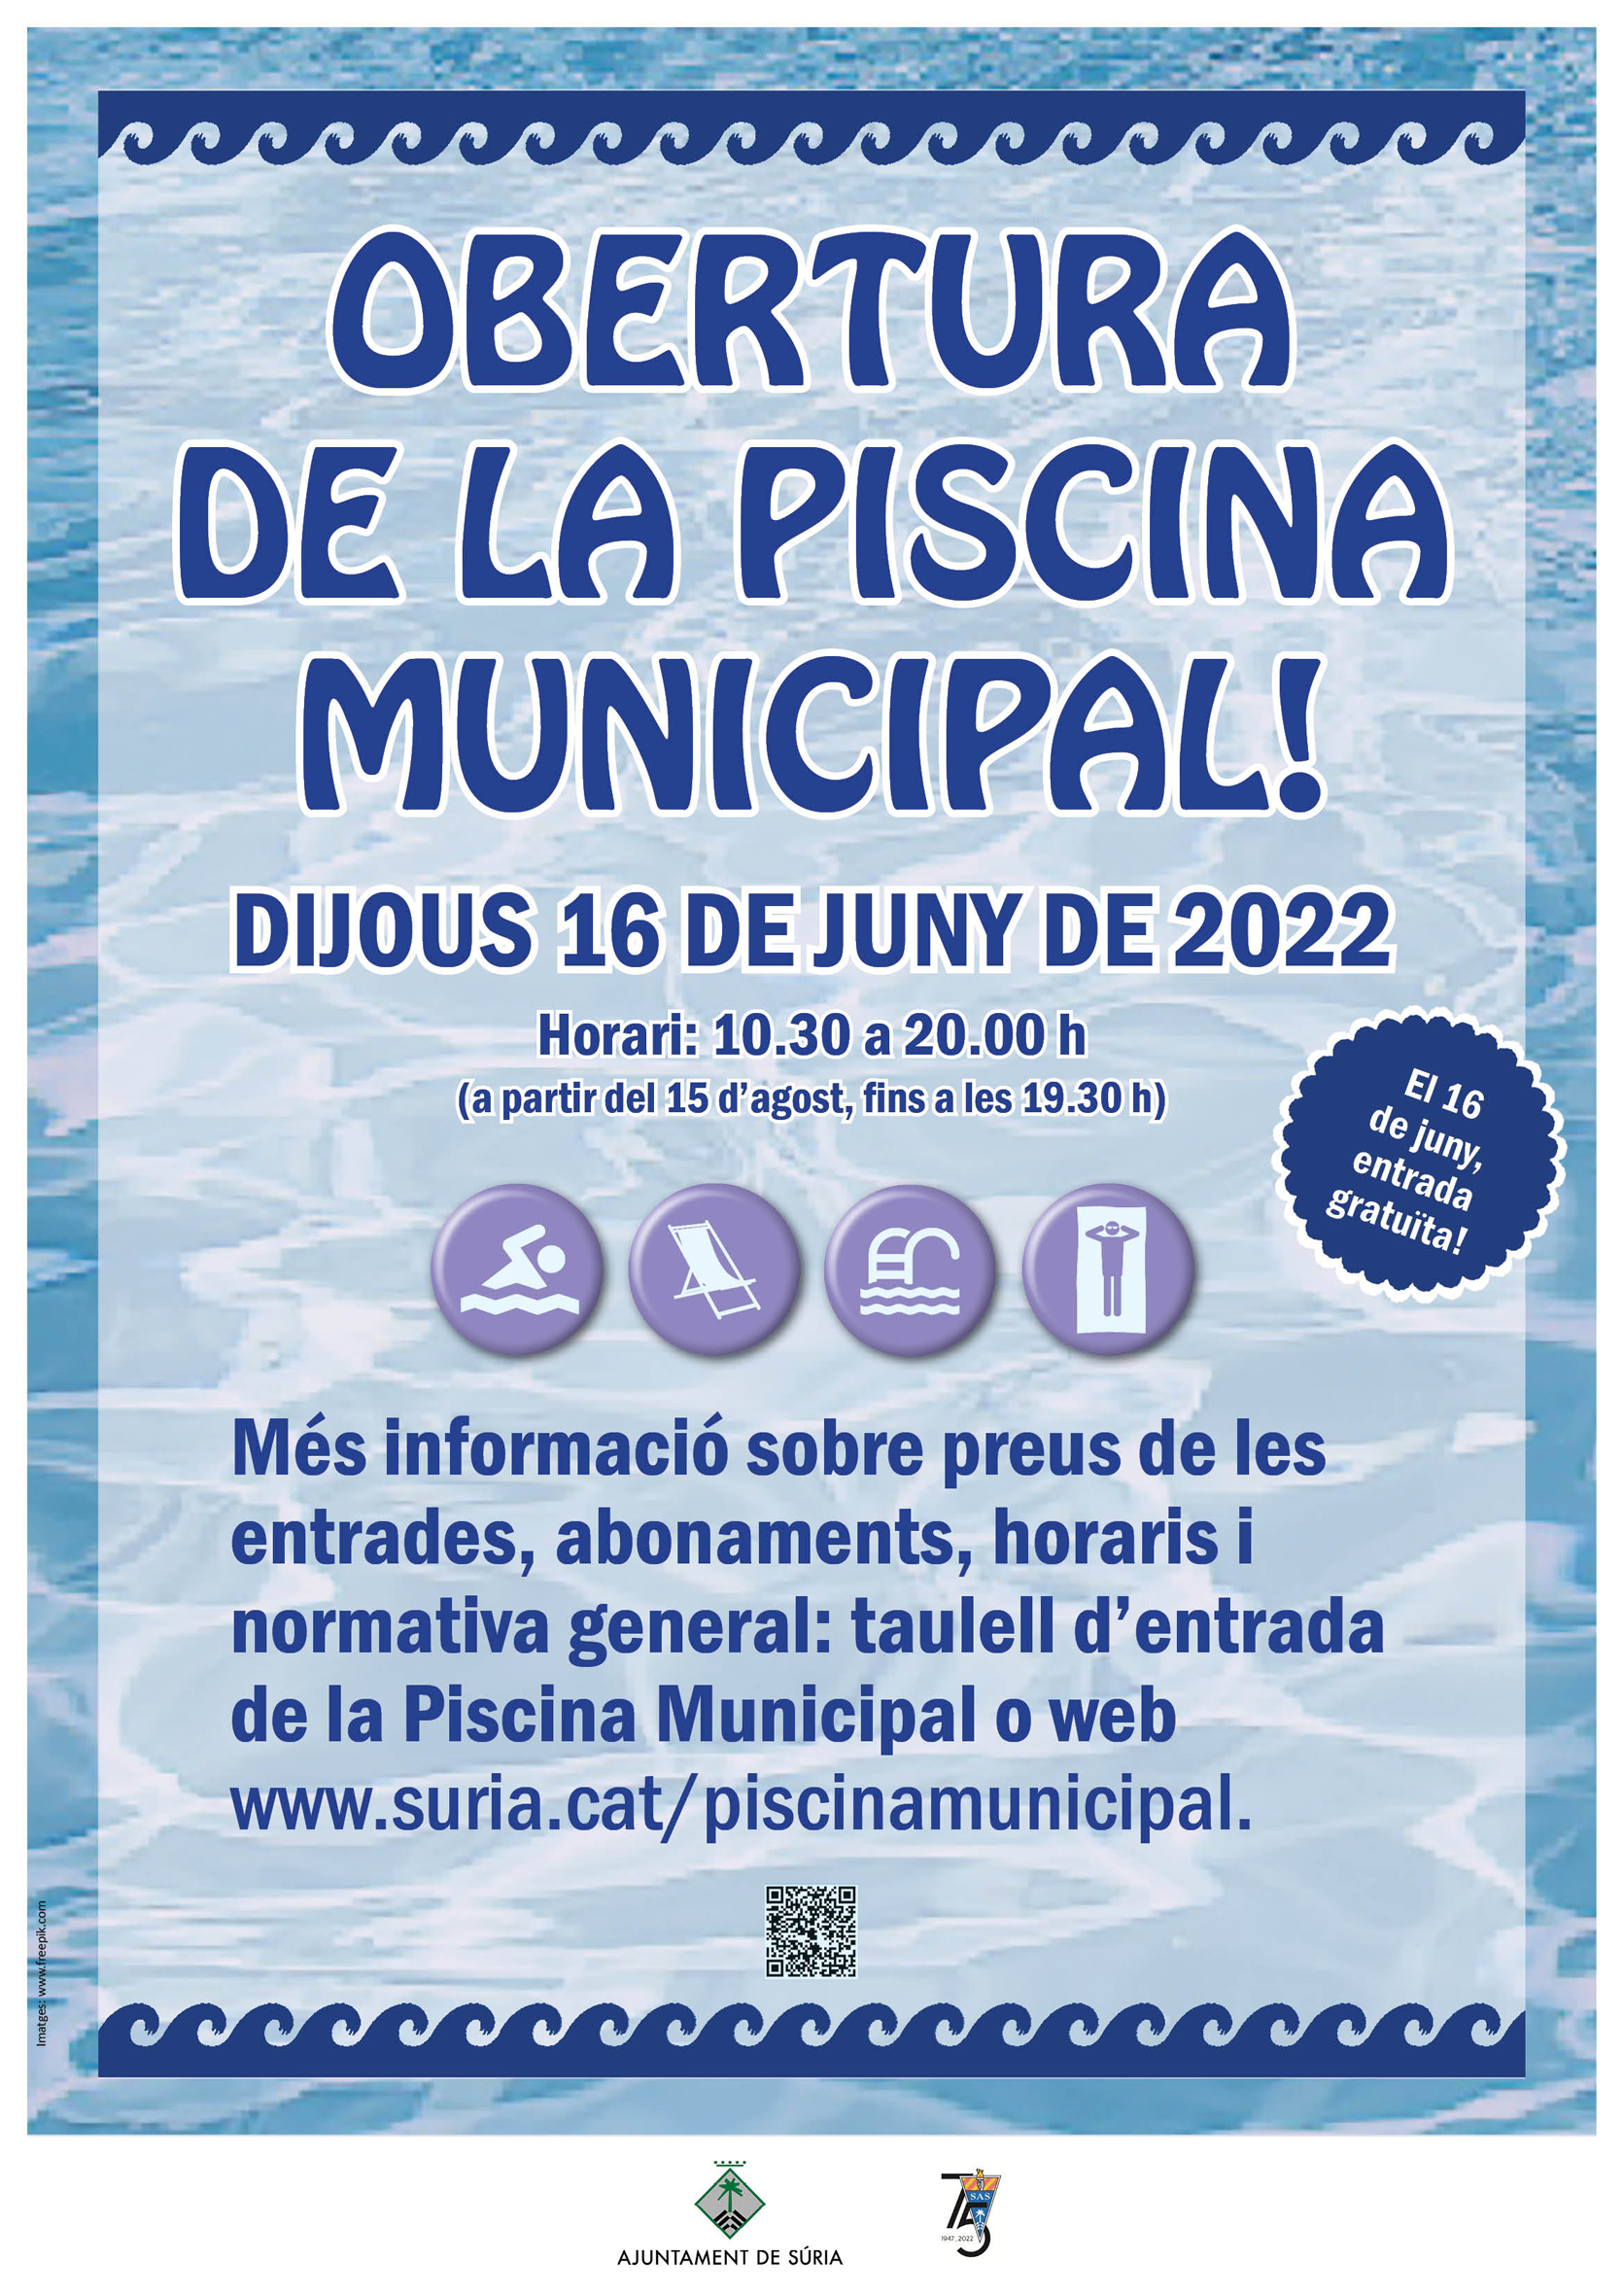 La temporada d'estiu de la Piscina Municipal comença aquest dijous 16 de juny